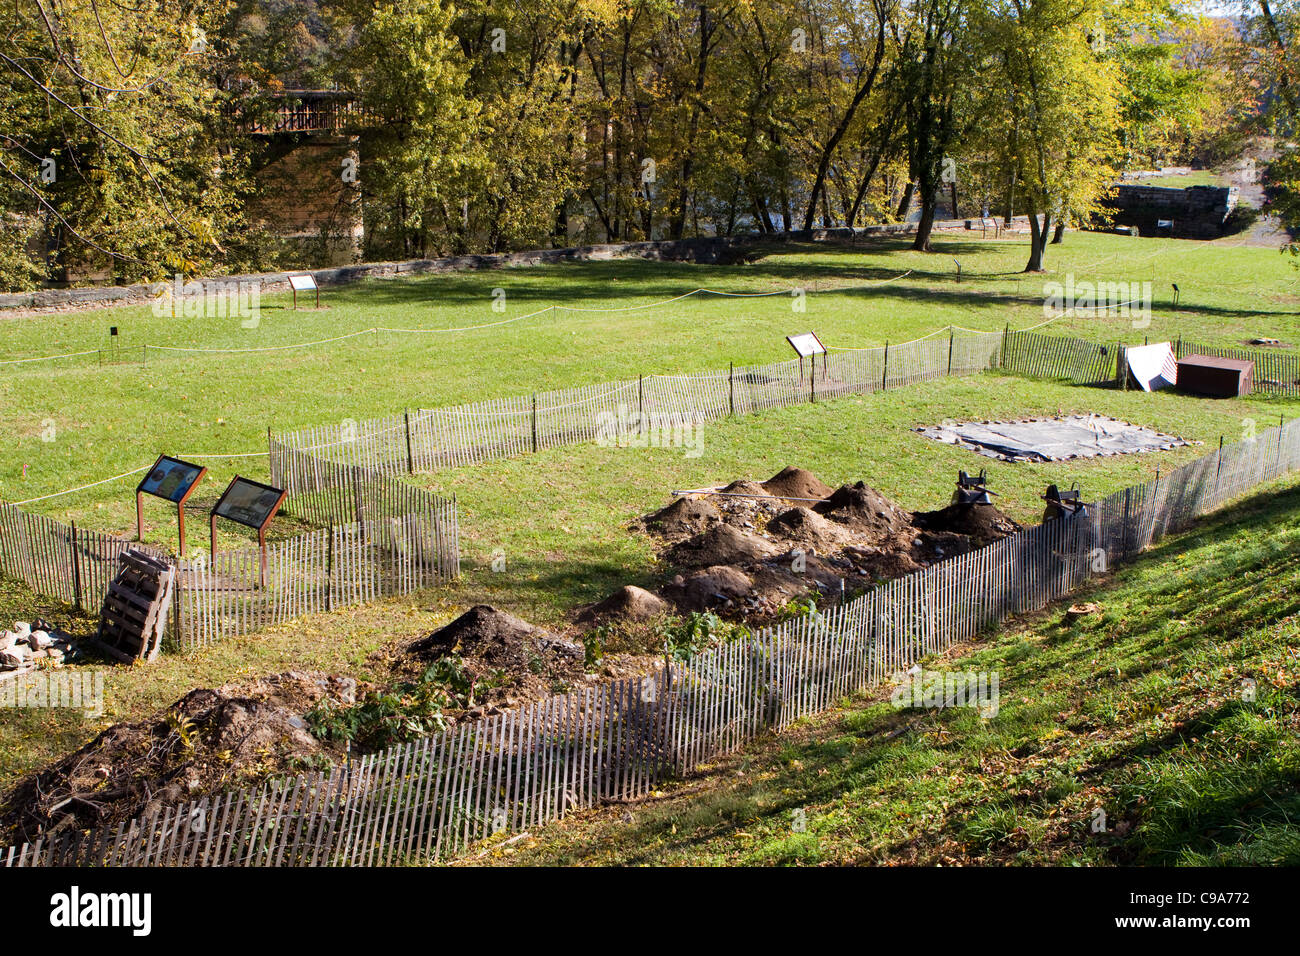 Archäologie dig Site bei Harpers Ferry National Historical Park in West Virginia, wo Artefakte aus dem Boden ausgegraben werden. Stockfoto